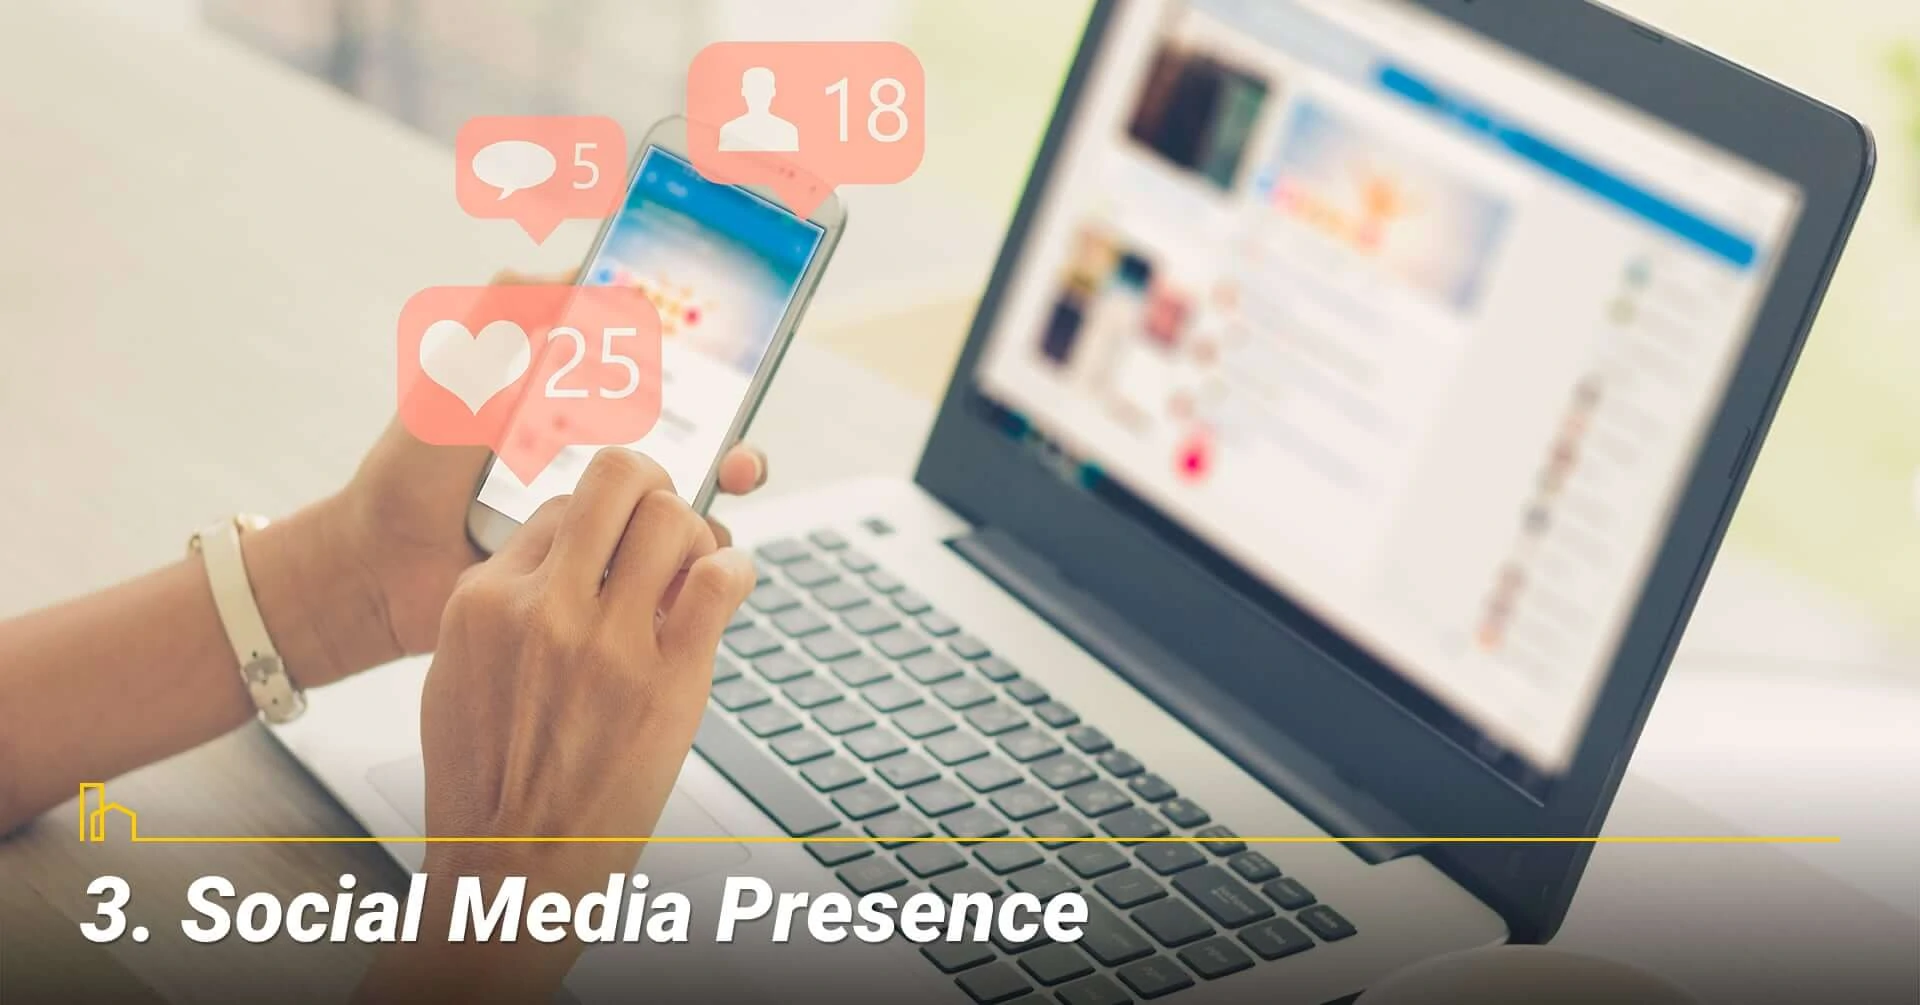 Social Media Presence, activities on Social Media